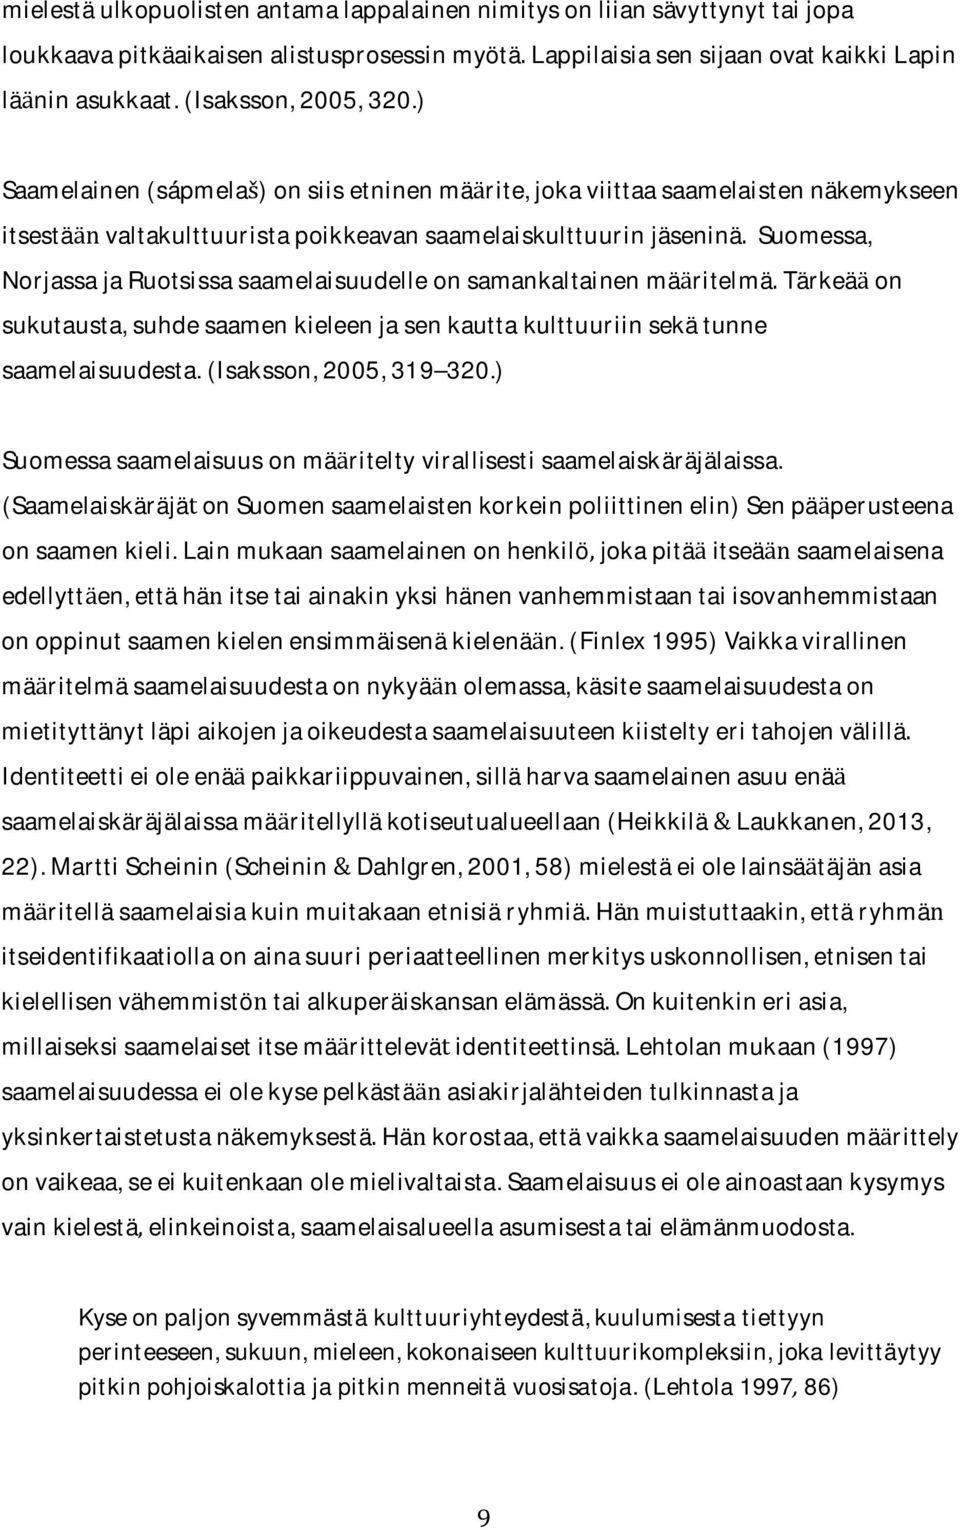 NorjassajaRuotsissasaamelaisuudelleonsamankaltainenmaritelmaTarkeaon sukutausta,suhdesaamenkieleenjasenkauttakulttuuriinsekatunne saamelaisuudesta.(isaksson,2005,319 320.